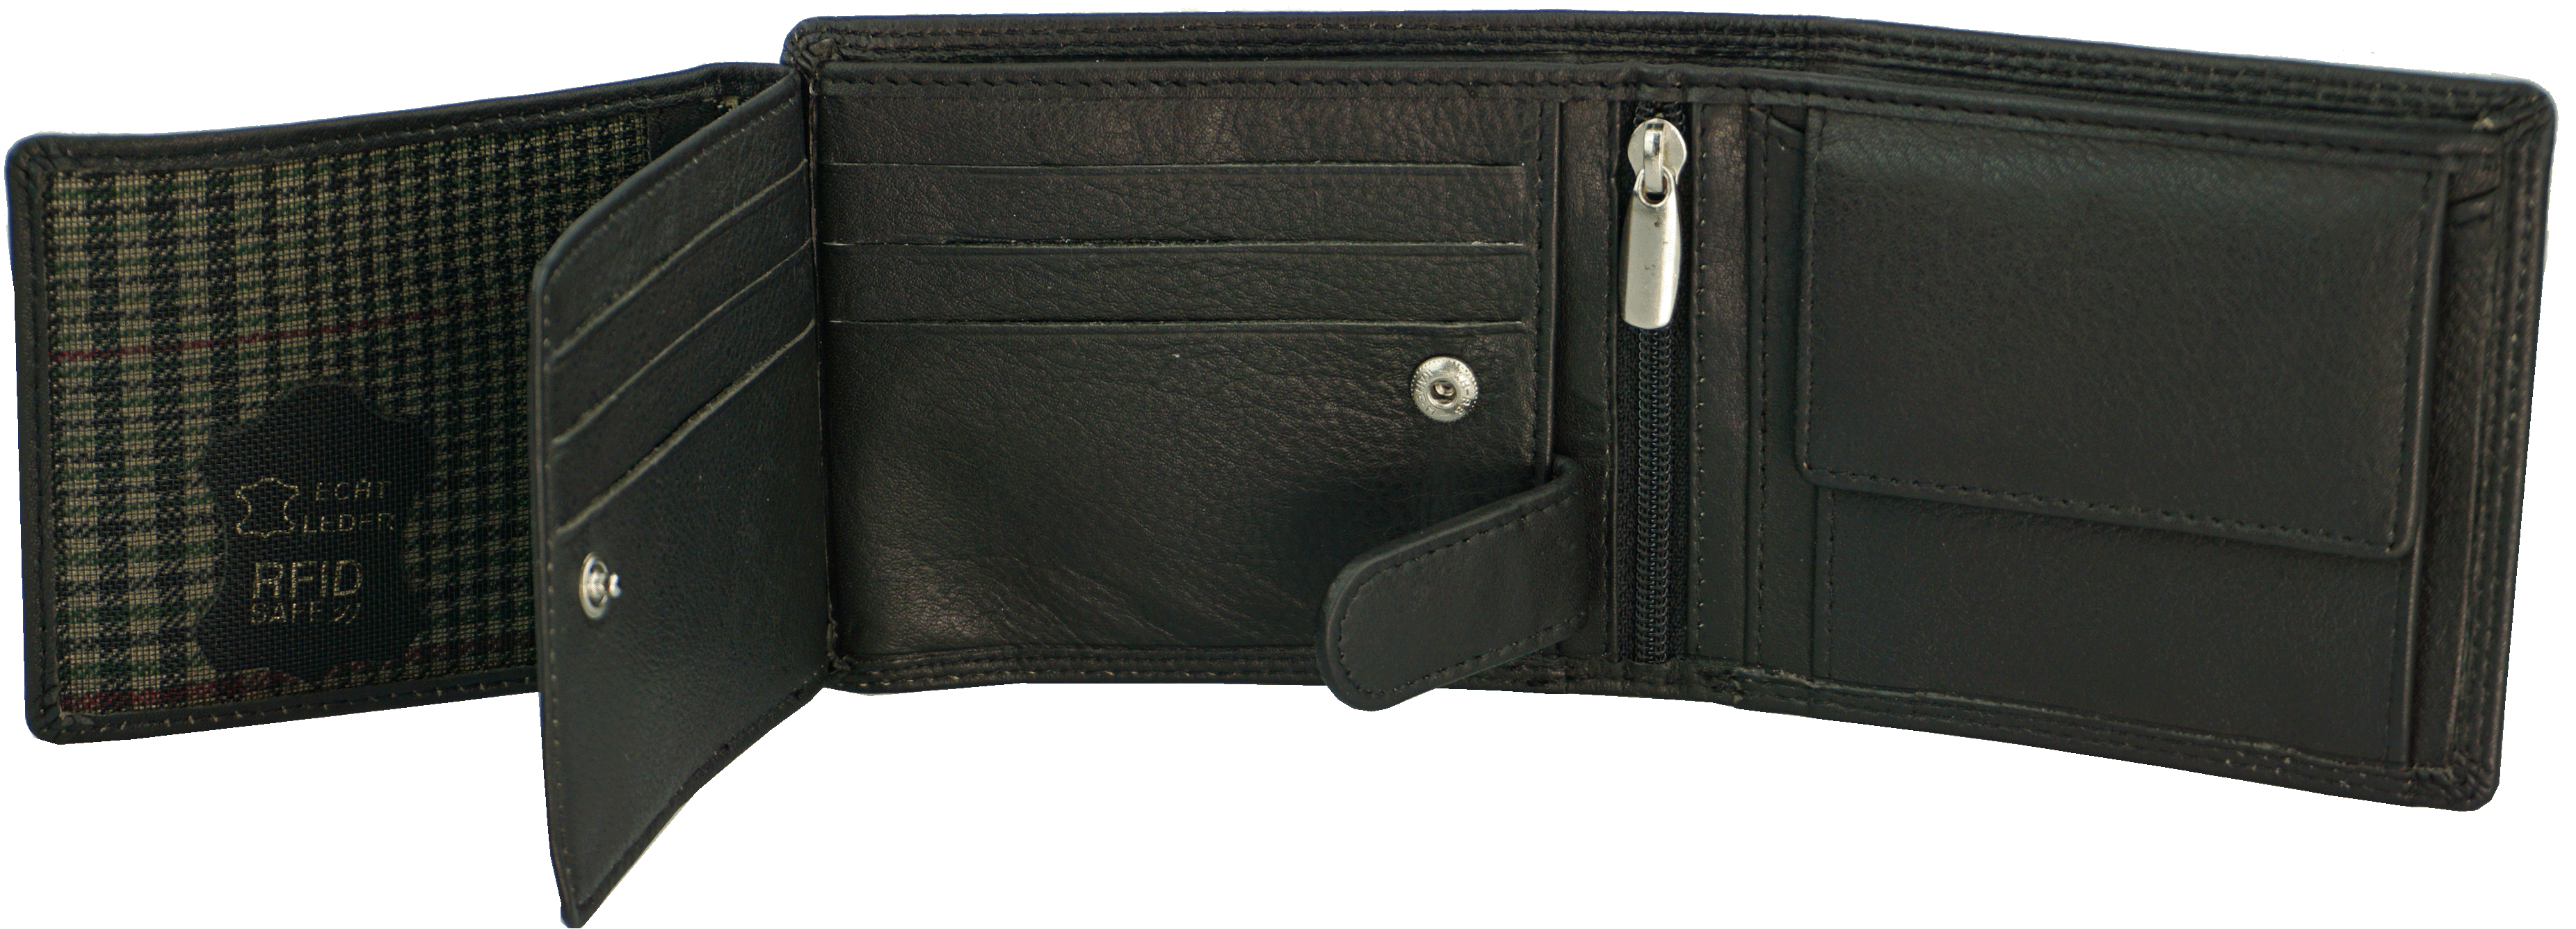 Scheintasche Geldbörse Rindleder RFID in schwarz - K-102-60